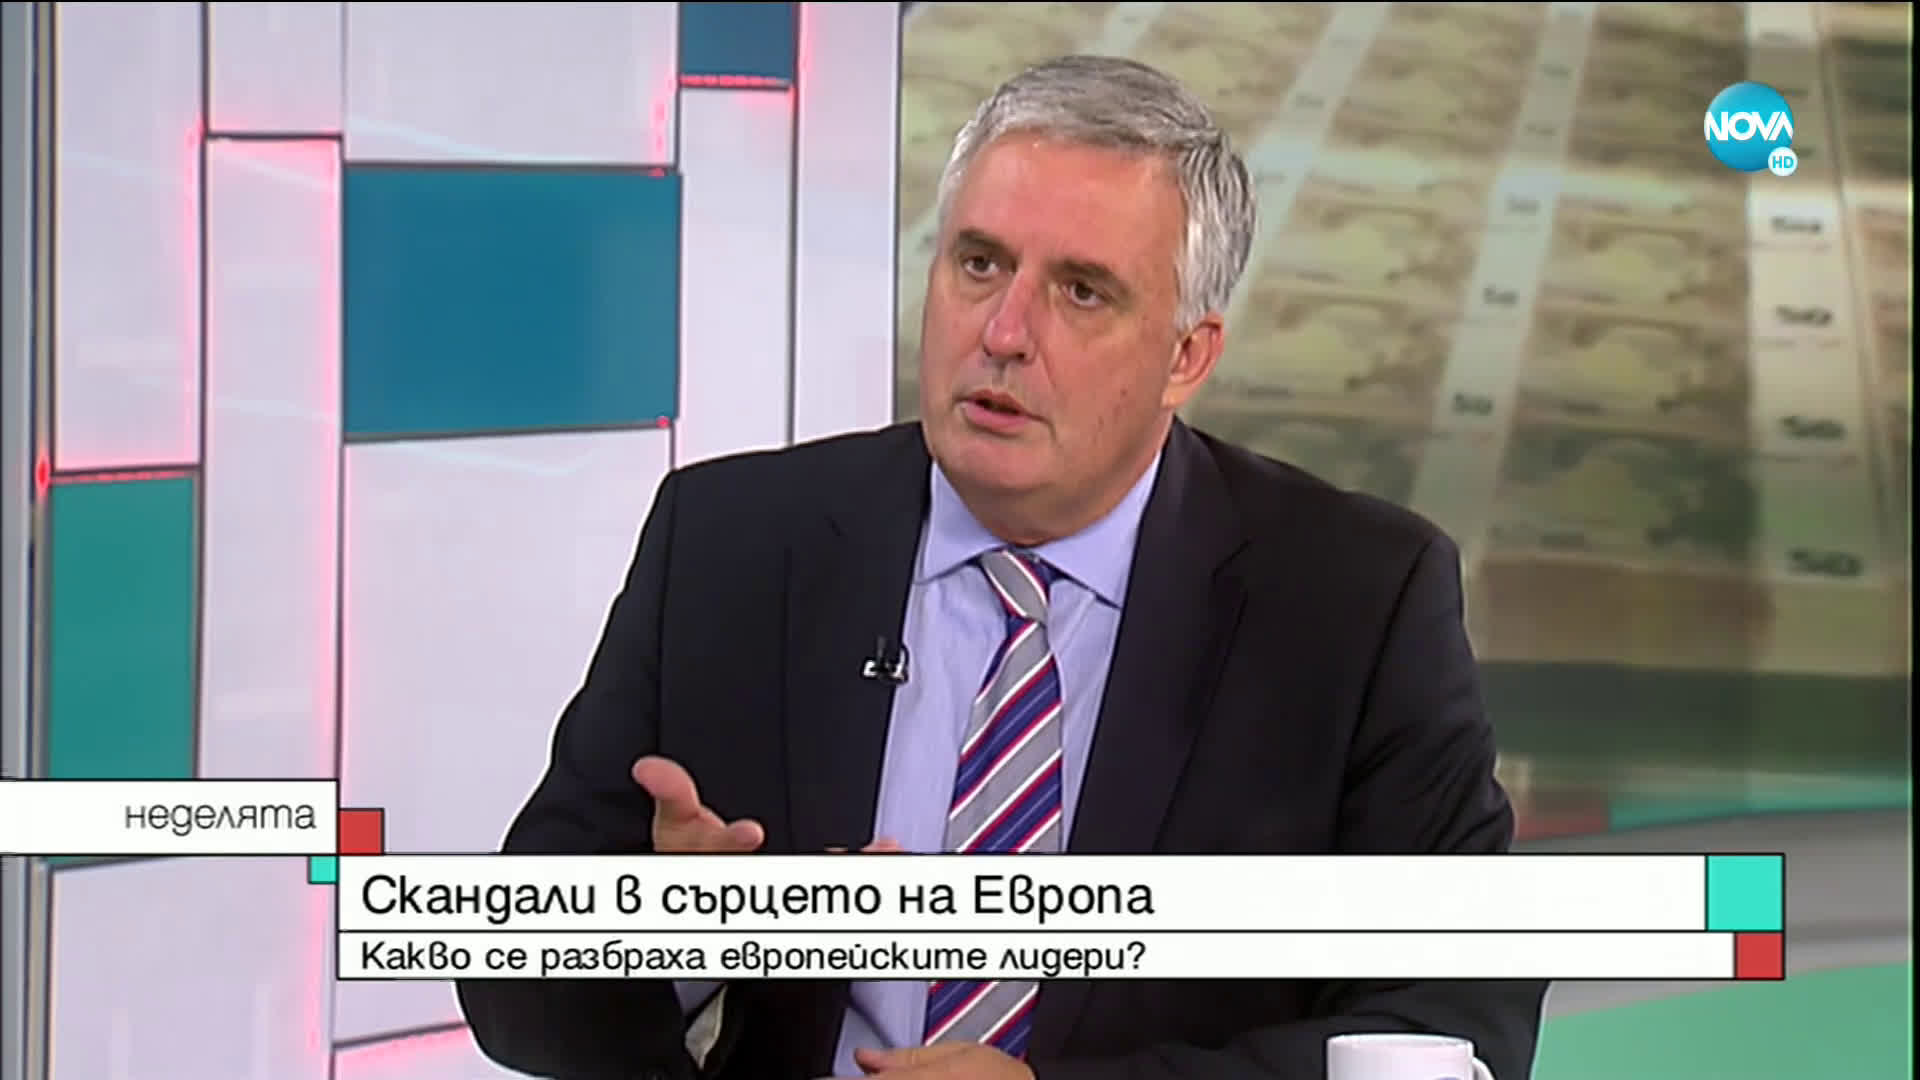 Ивайло Калфин: Има шанс след 5-6 години България да има по-различни доходи и икономика